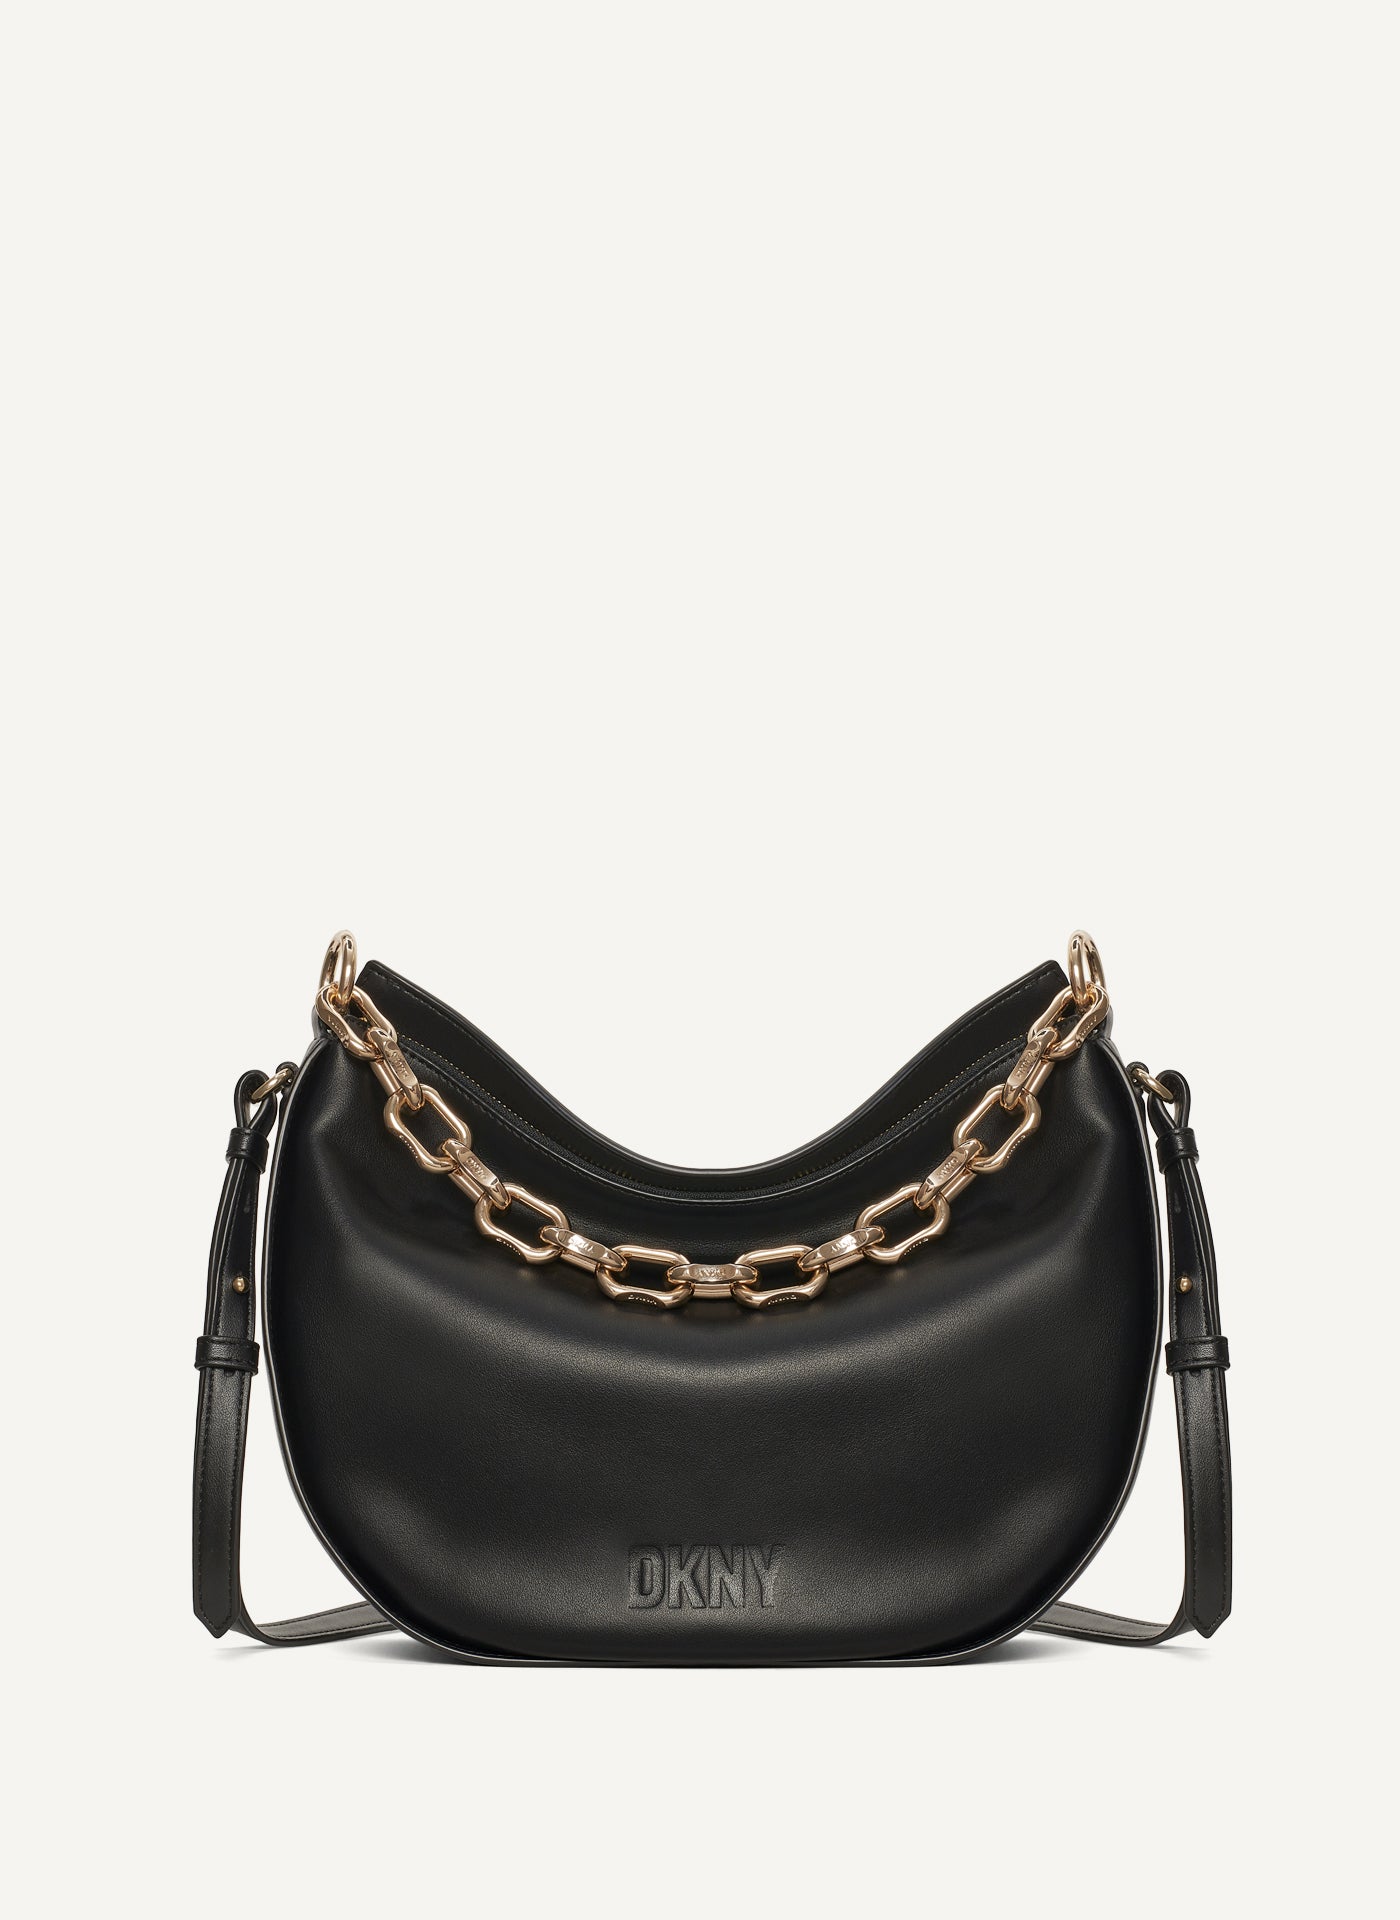 DKNY Women's Elissa Lg Shoulder Bag, Black Gold, One Size: Amazon.co.uk:  Fashion